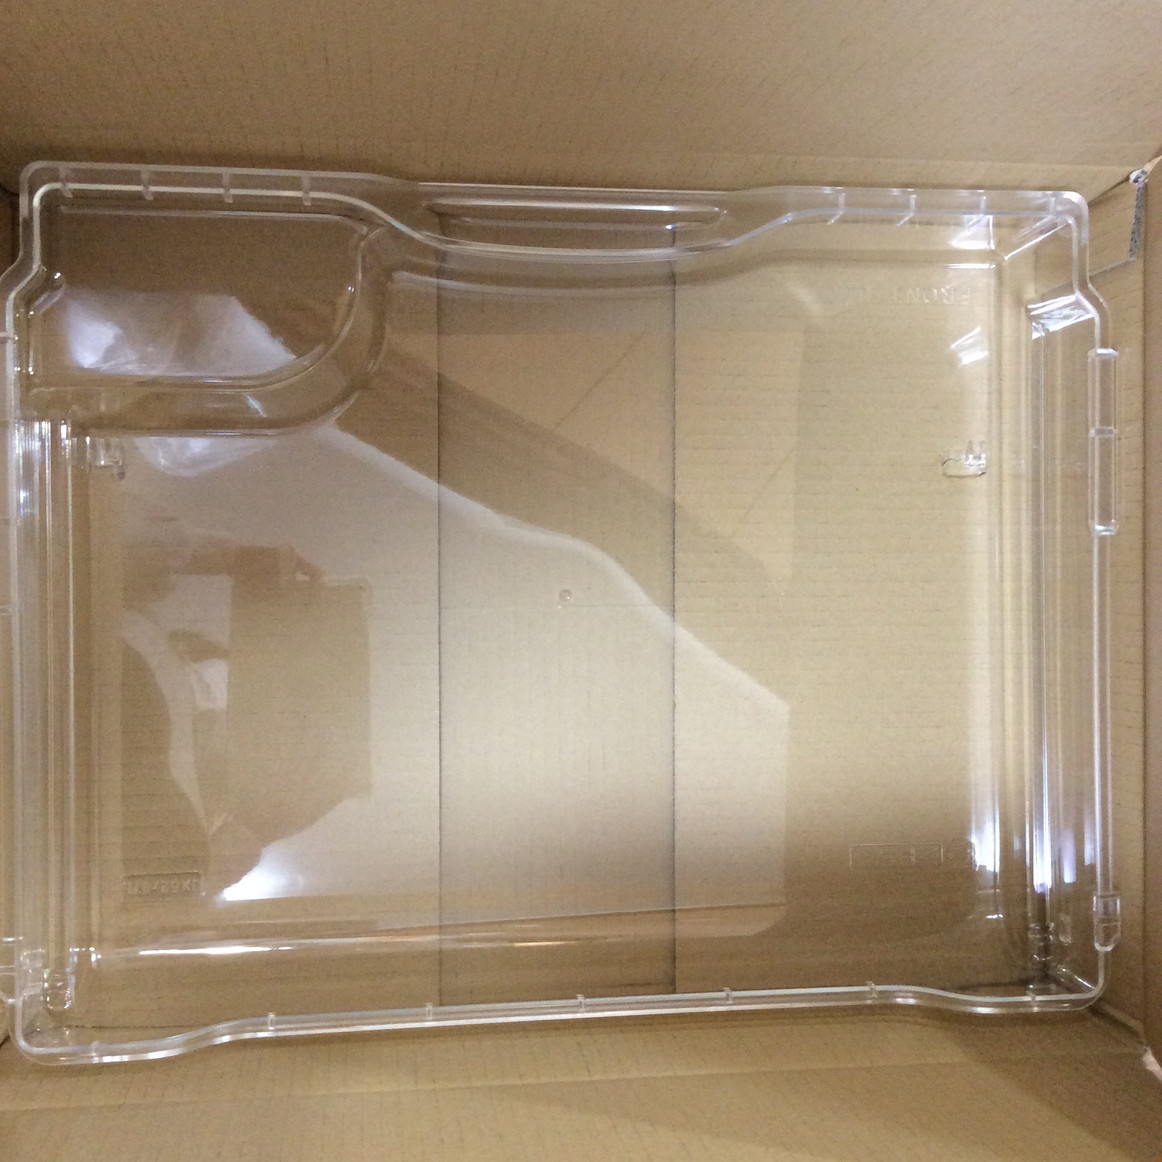 【三菱】 MITSUBISHI M20VY7414 冷蔵庫 mr-jx52w-br フリージングケース(上)画像